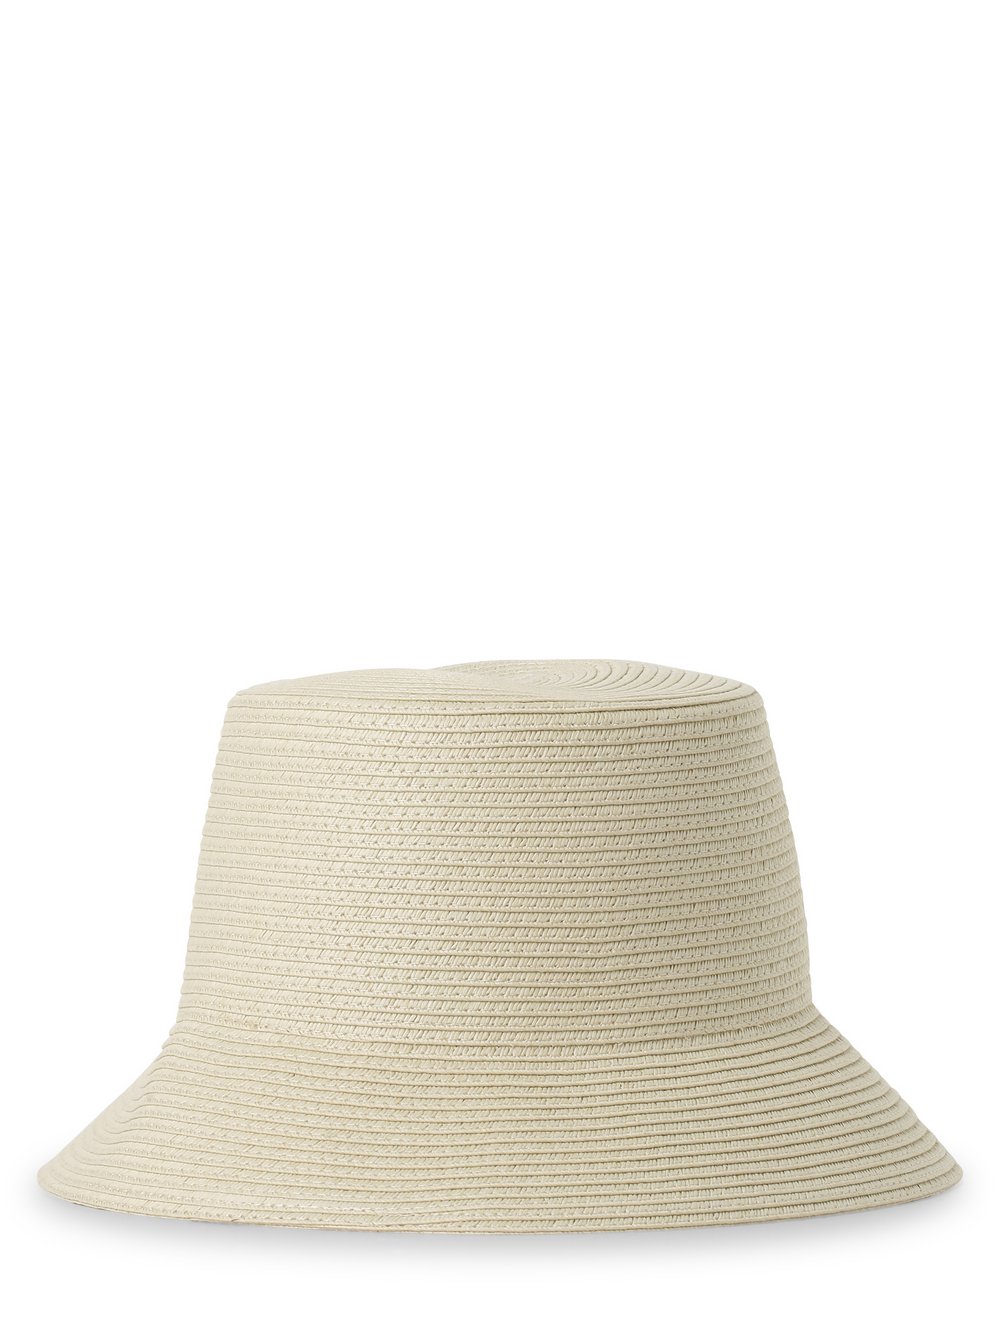 Marie Lund - Damski bucket hat, beżowy